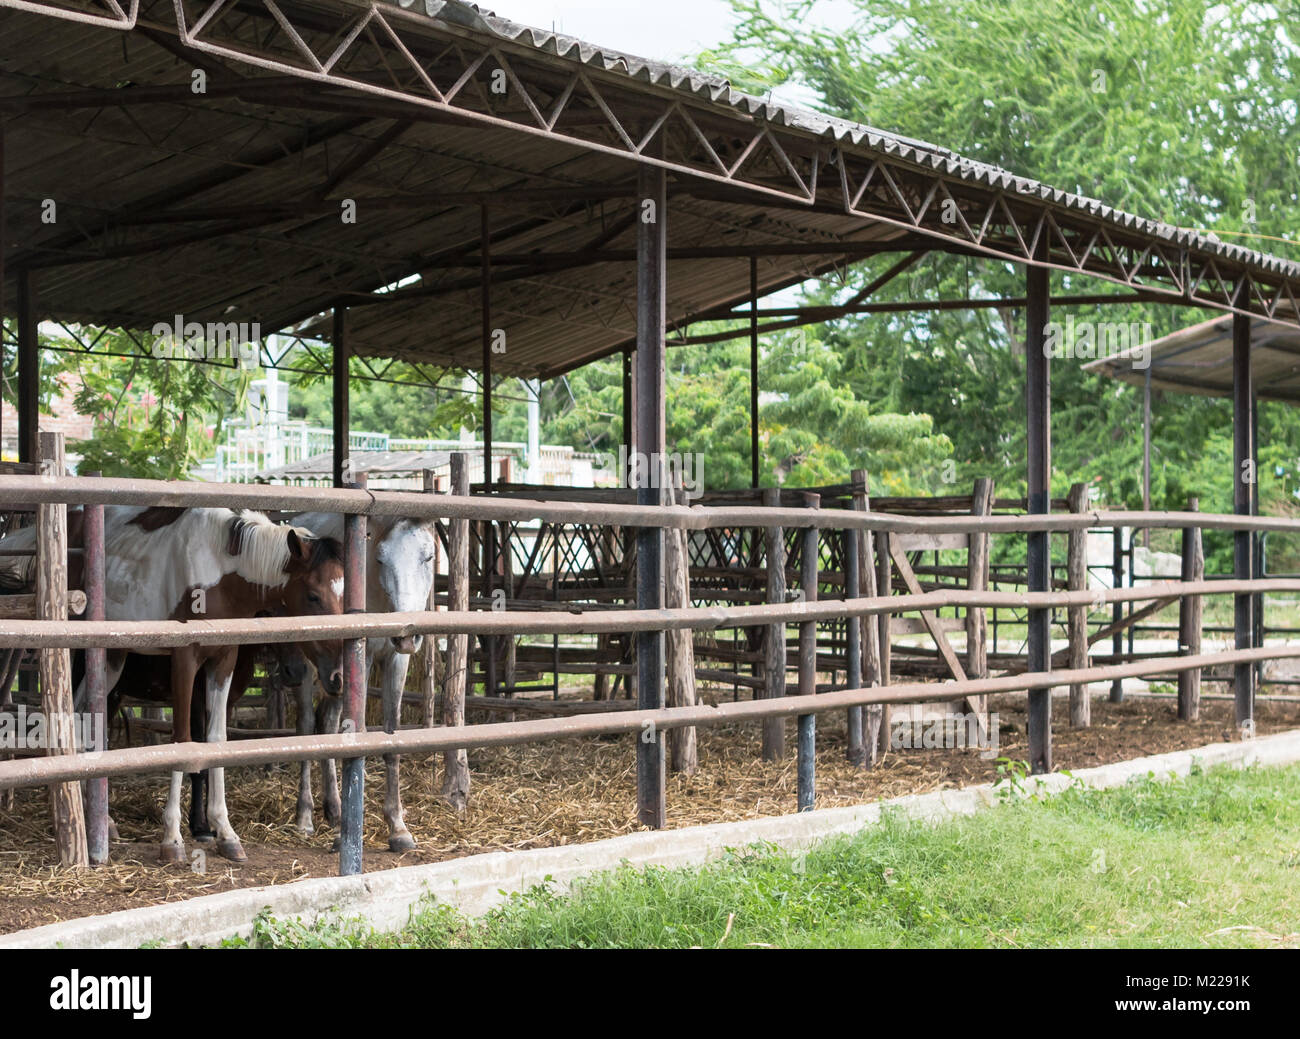 Las Tunas, Kuba - September 4, 2017: Abgezehrte Pferde zusammen in einem einzigen am Ort Messegelände abgewürgt. Stockfoto